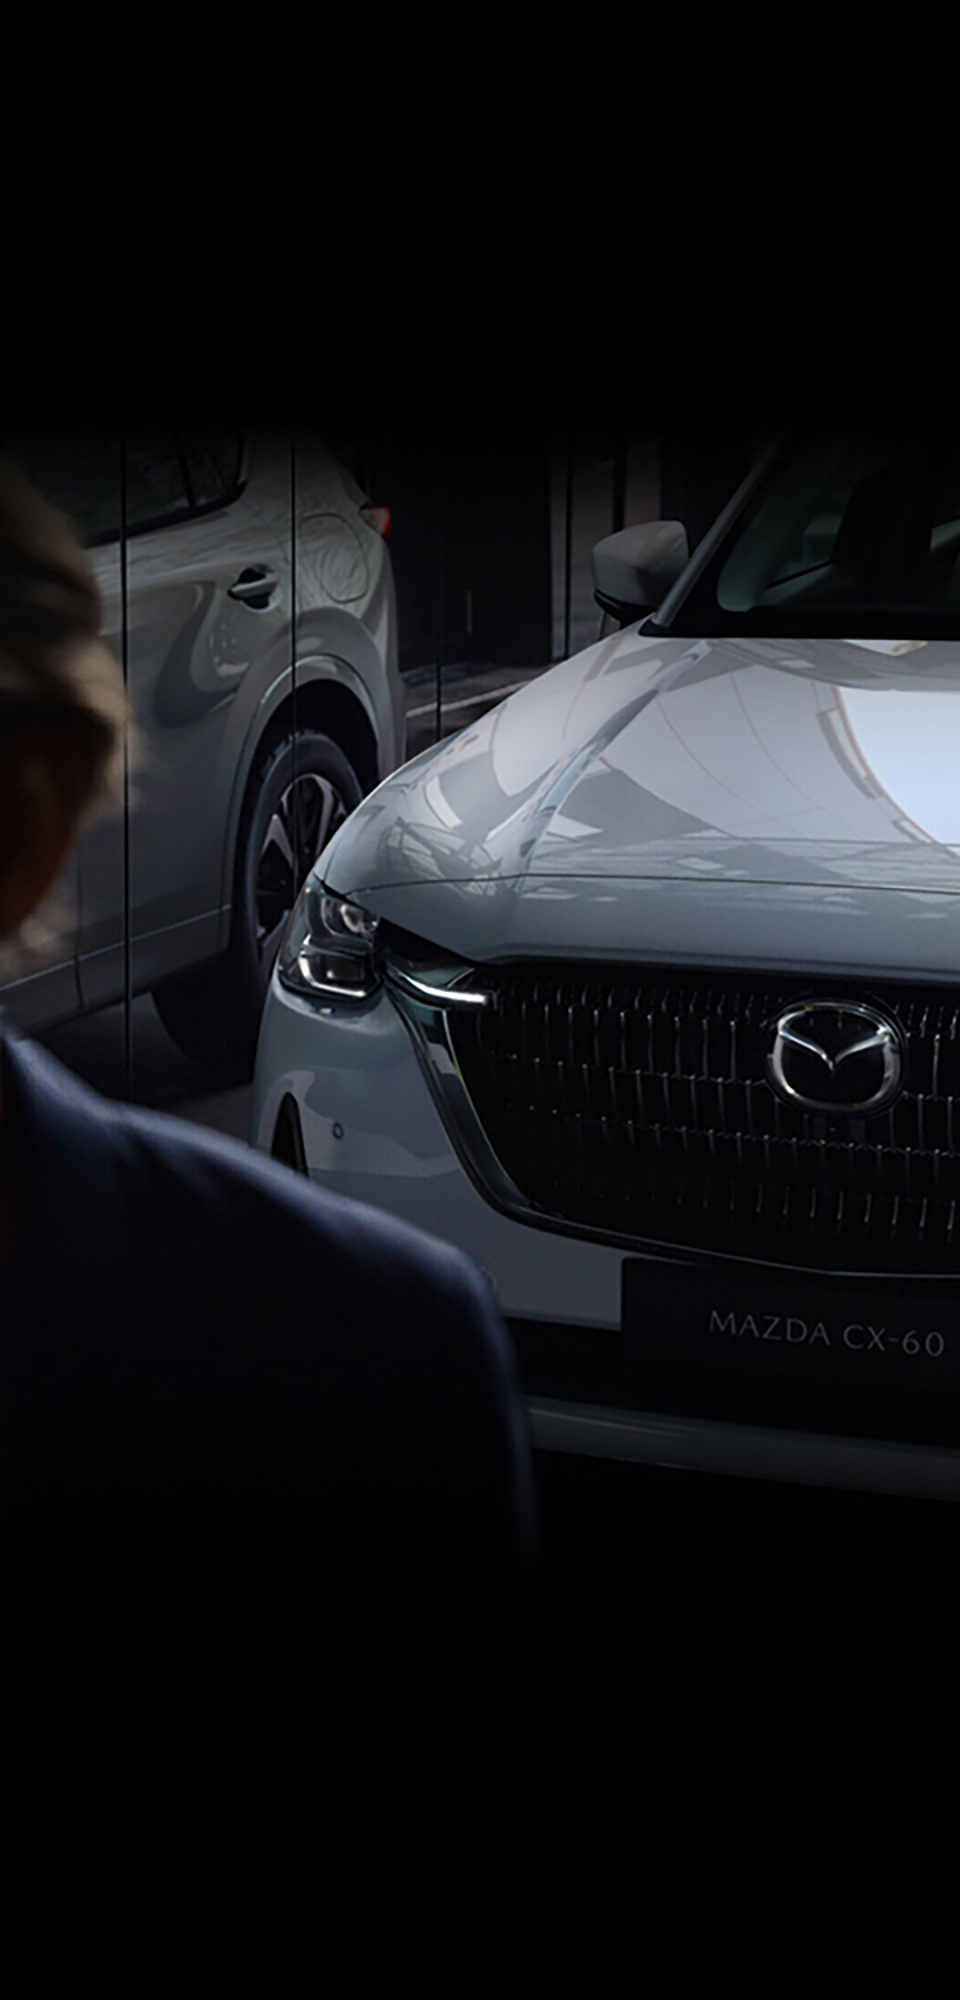 Der geräumige Innenraum des neuen Mazda CX-60 Plug-in Hybrid SUV geprägt von japanischer Handwerkskunst.